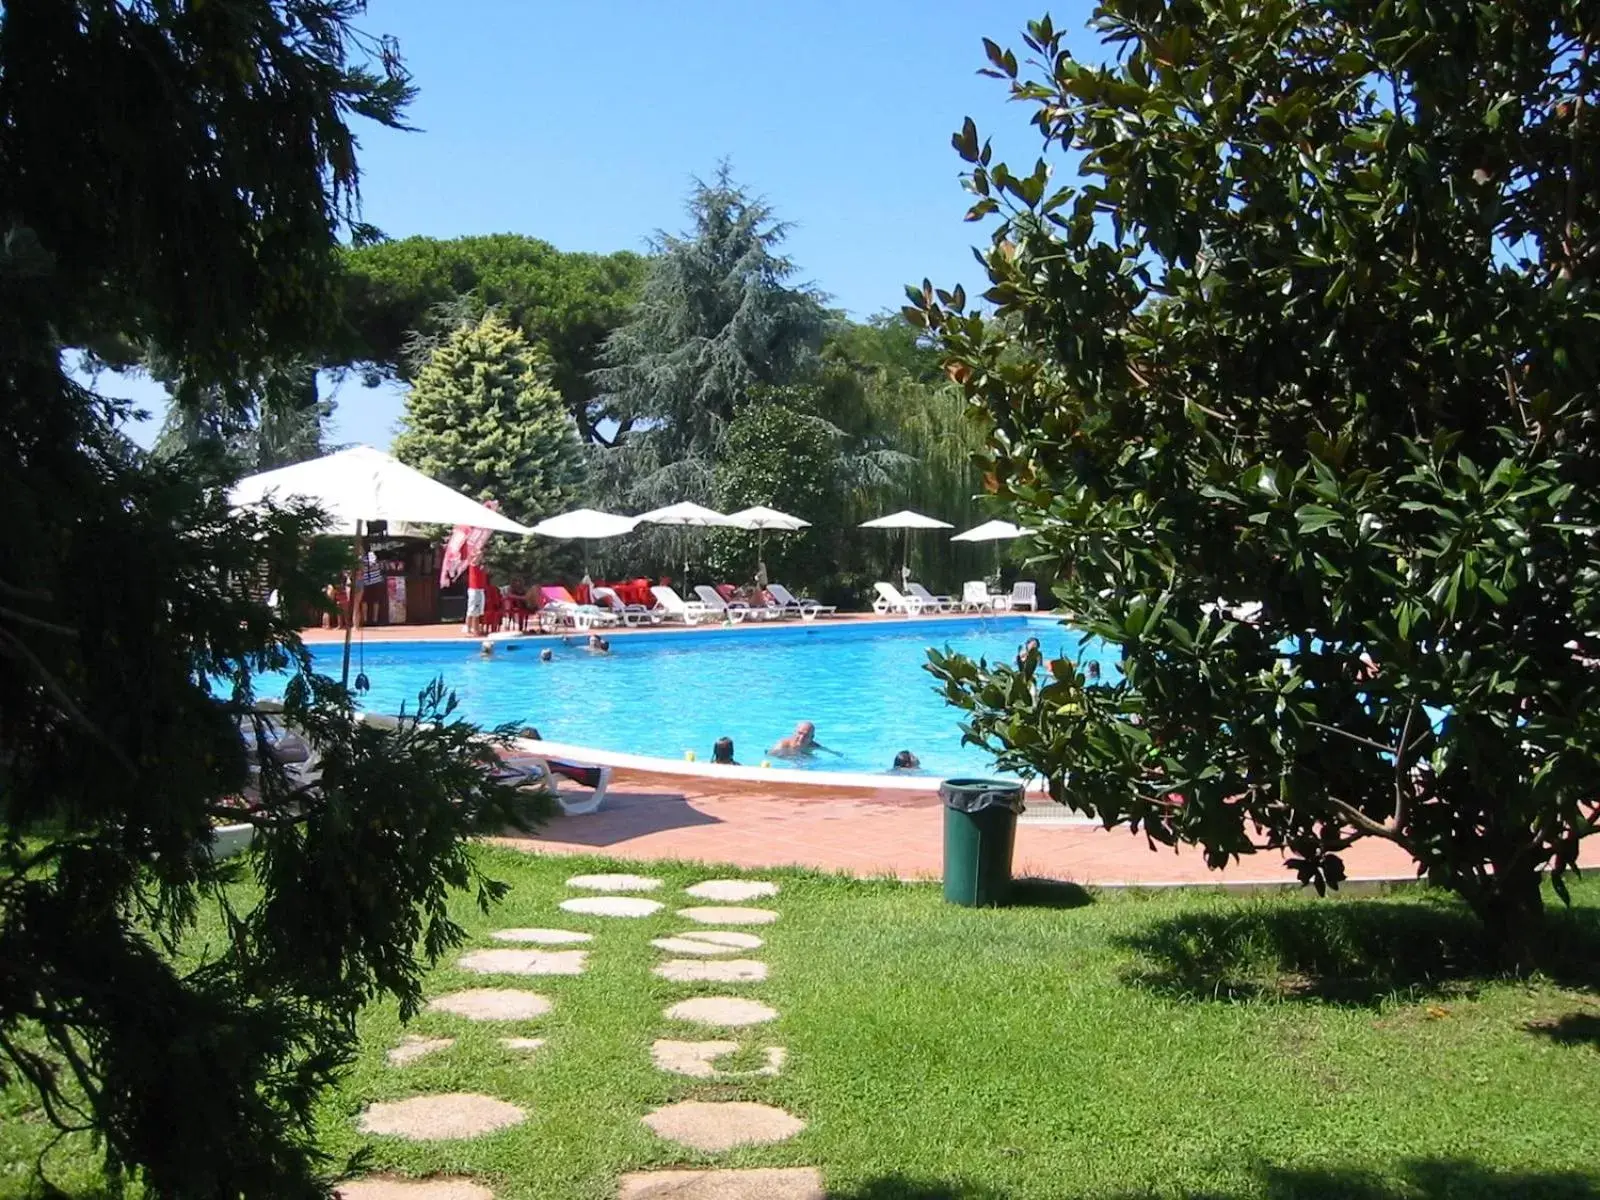 Day, Swimming Pool in Hotel Parco Dei Principi